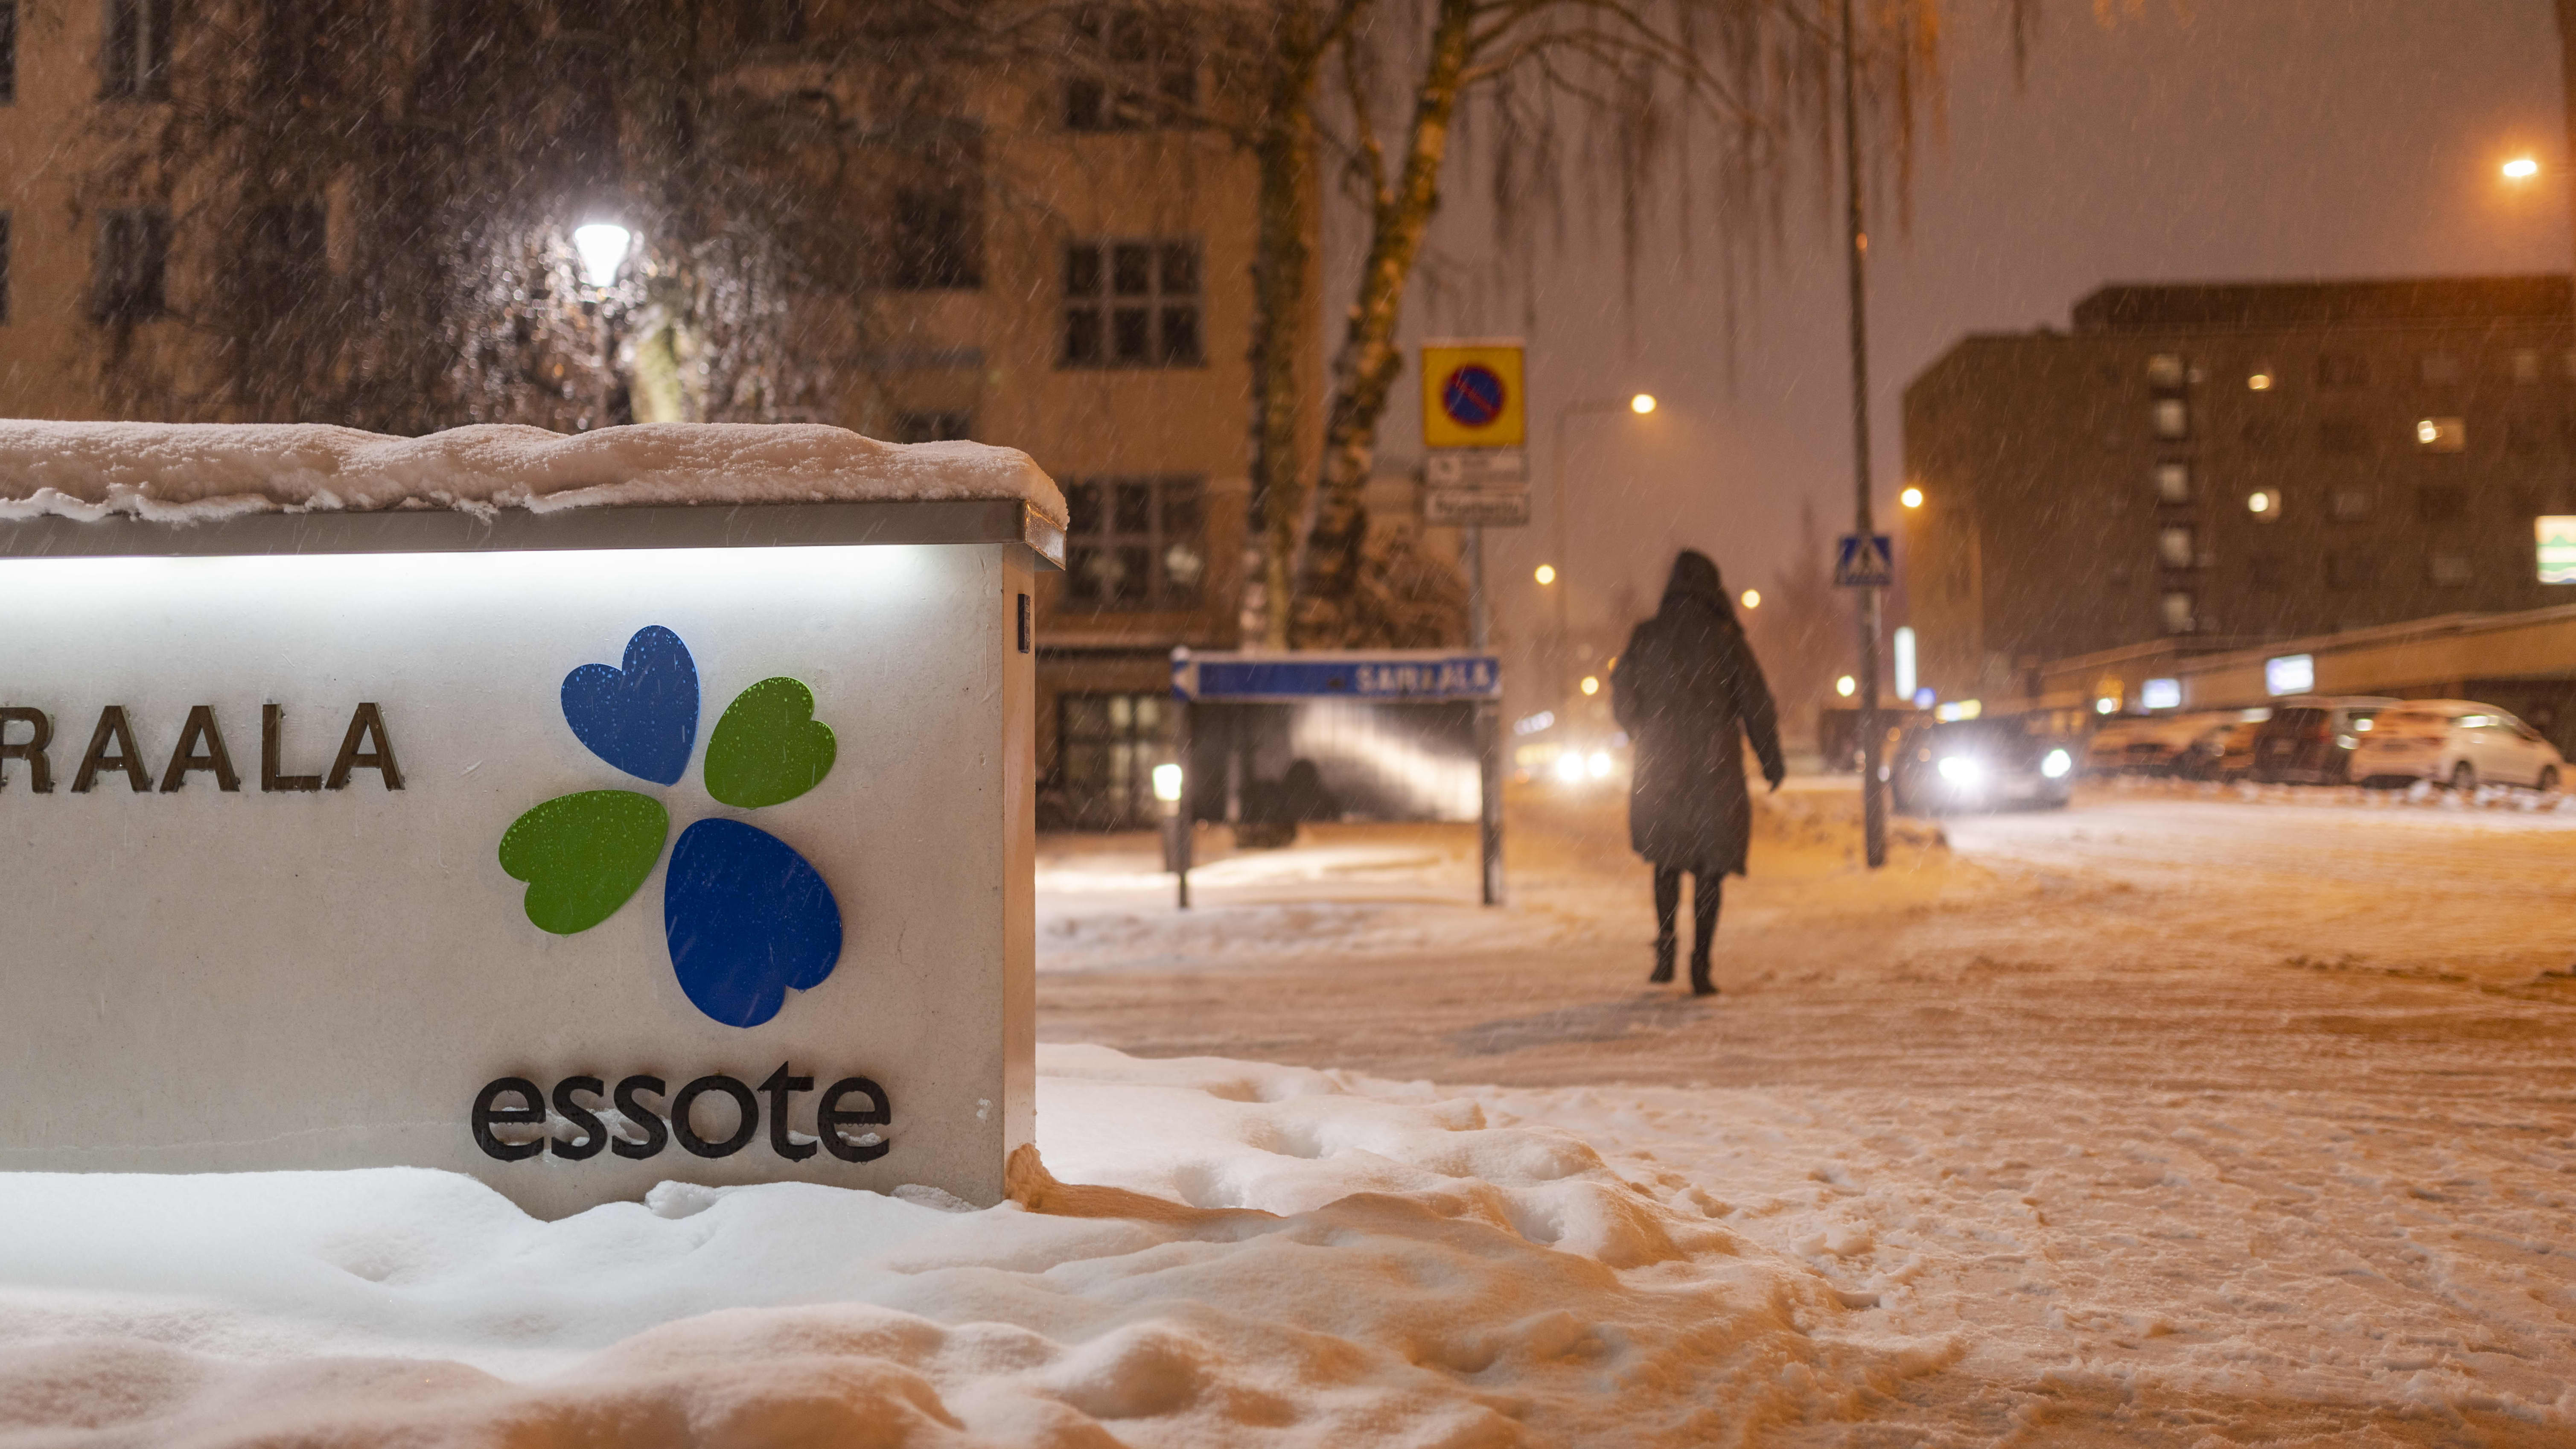 Talvinen maisema Mikkelin keskussairaalan edustalla. Henkilö kävelee kauemmaksi kamerasta lumisateessa. Edustalla kuntayhtymä Essoten kyltti.